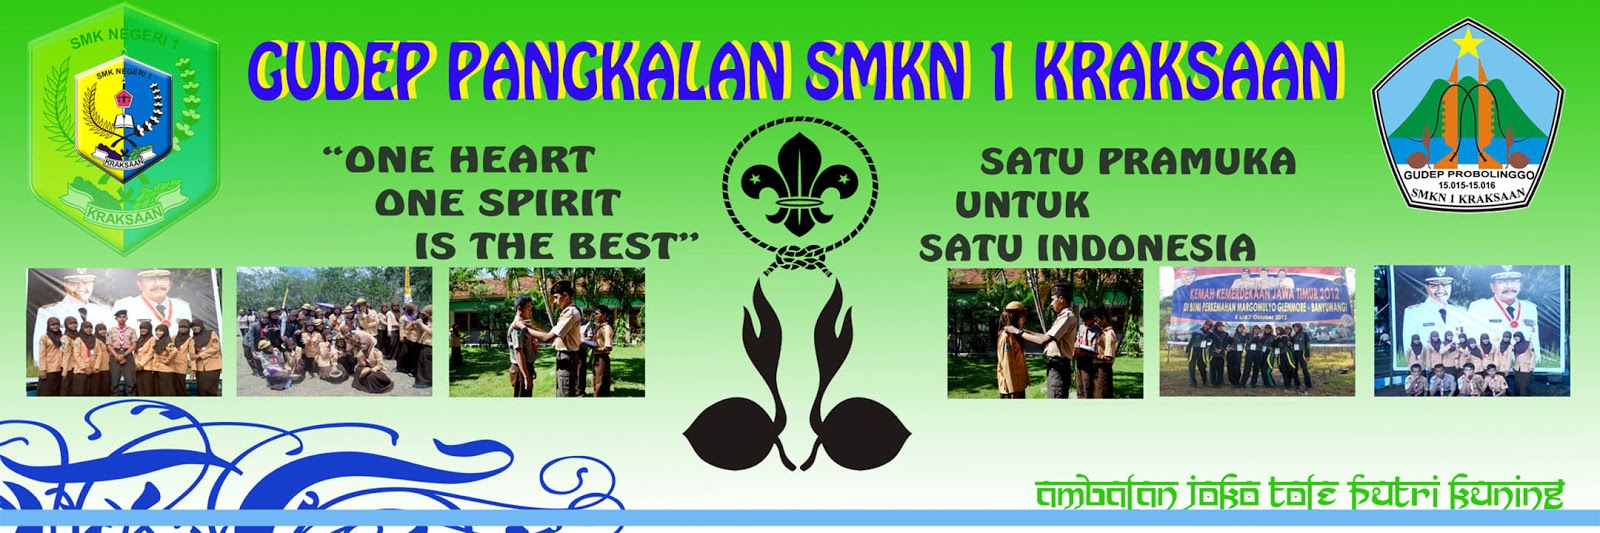  Banner  Pramuka  SMK Negeri 1 Kraksaan GuDep Pangkalan 